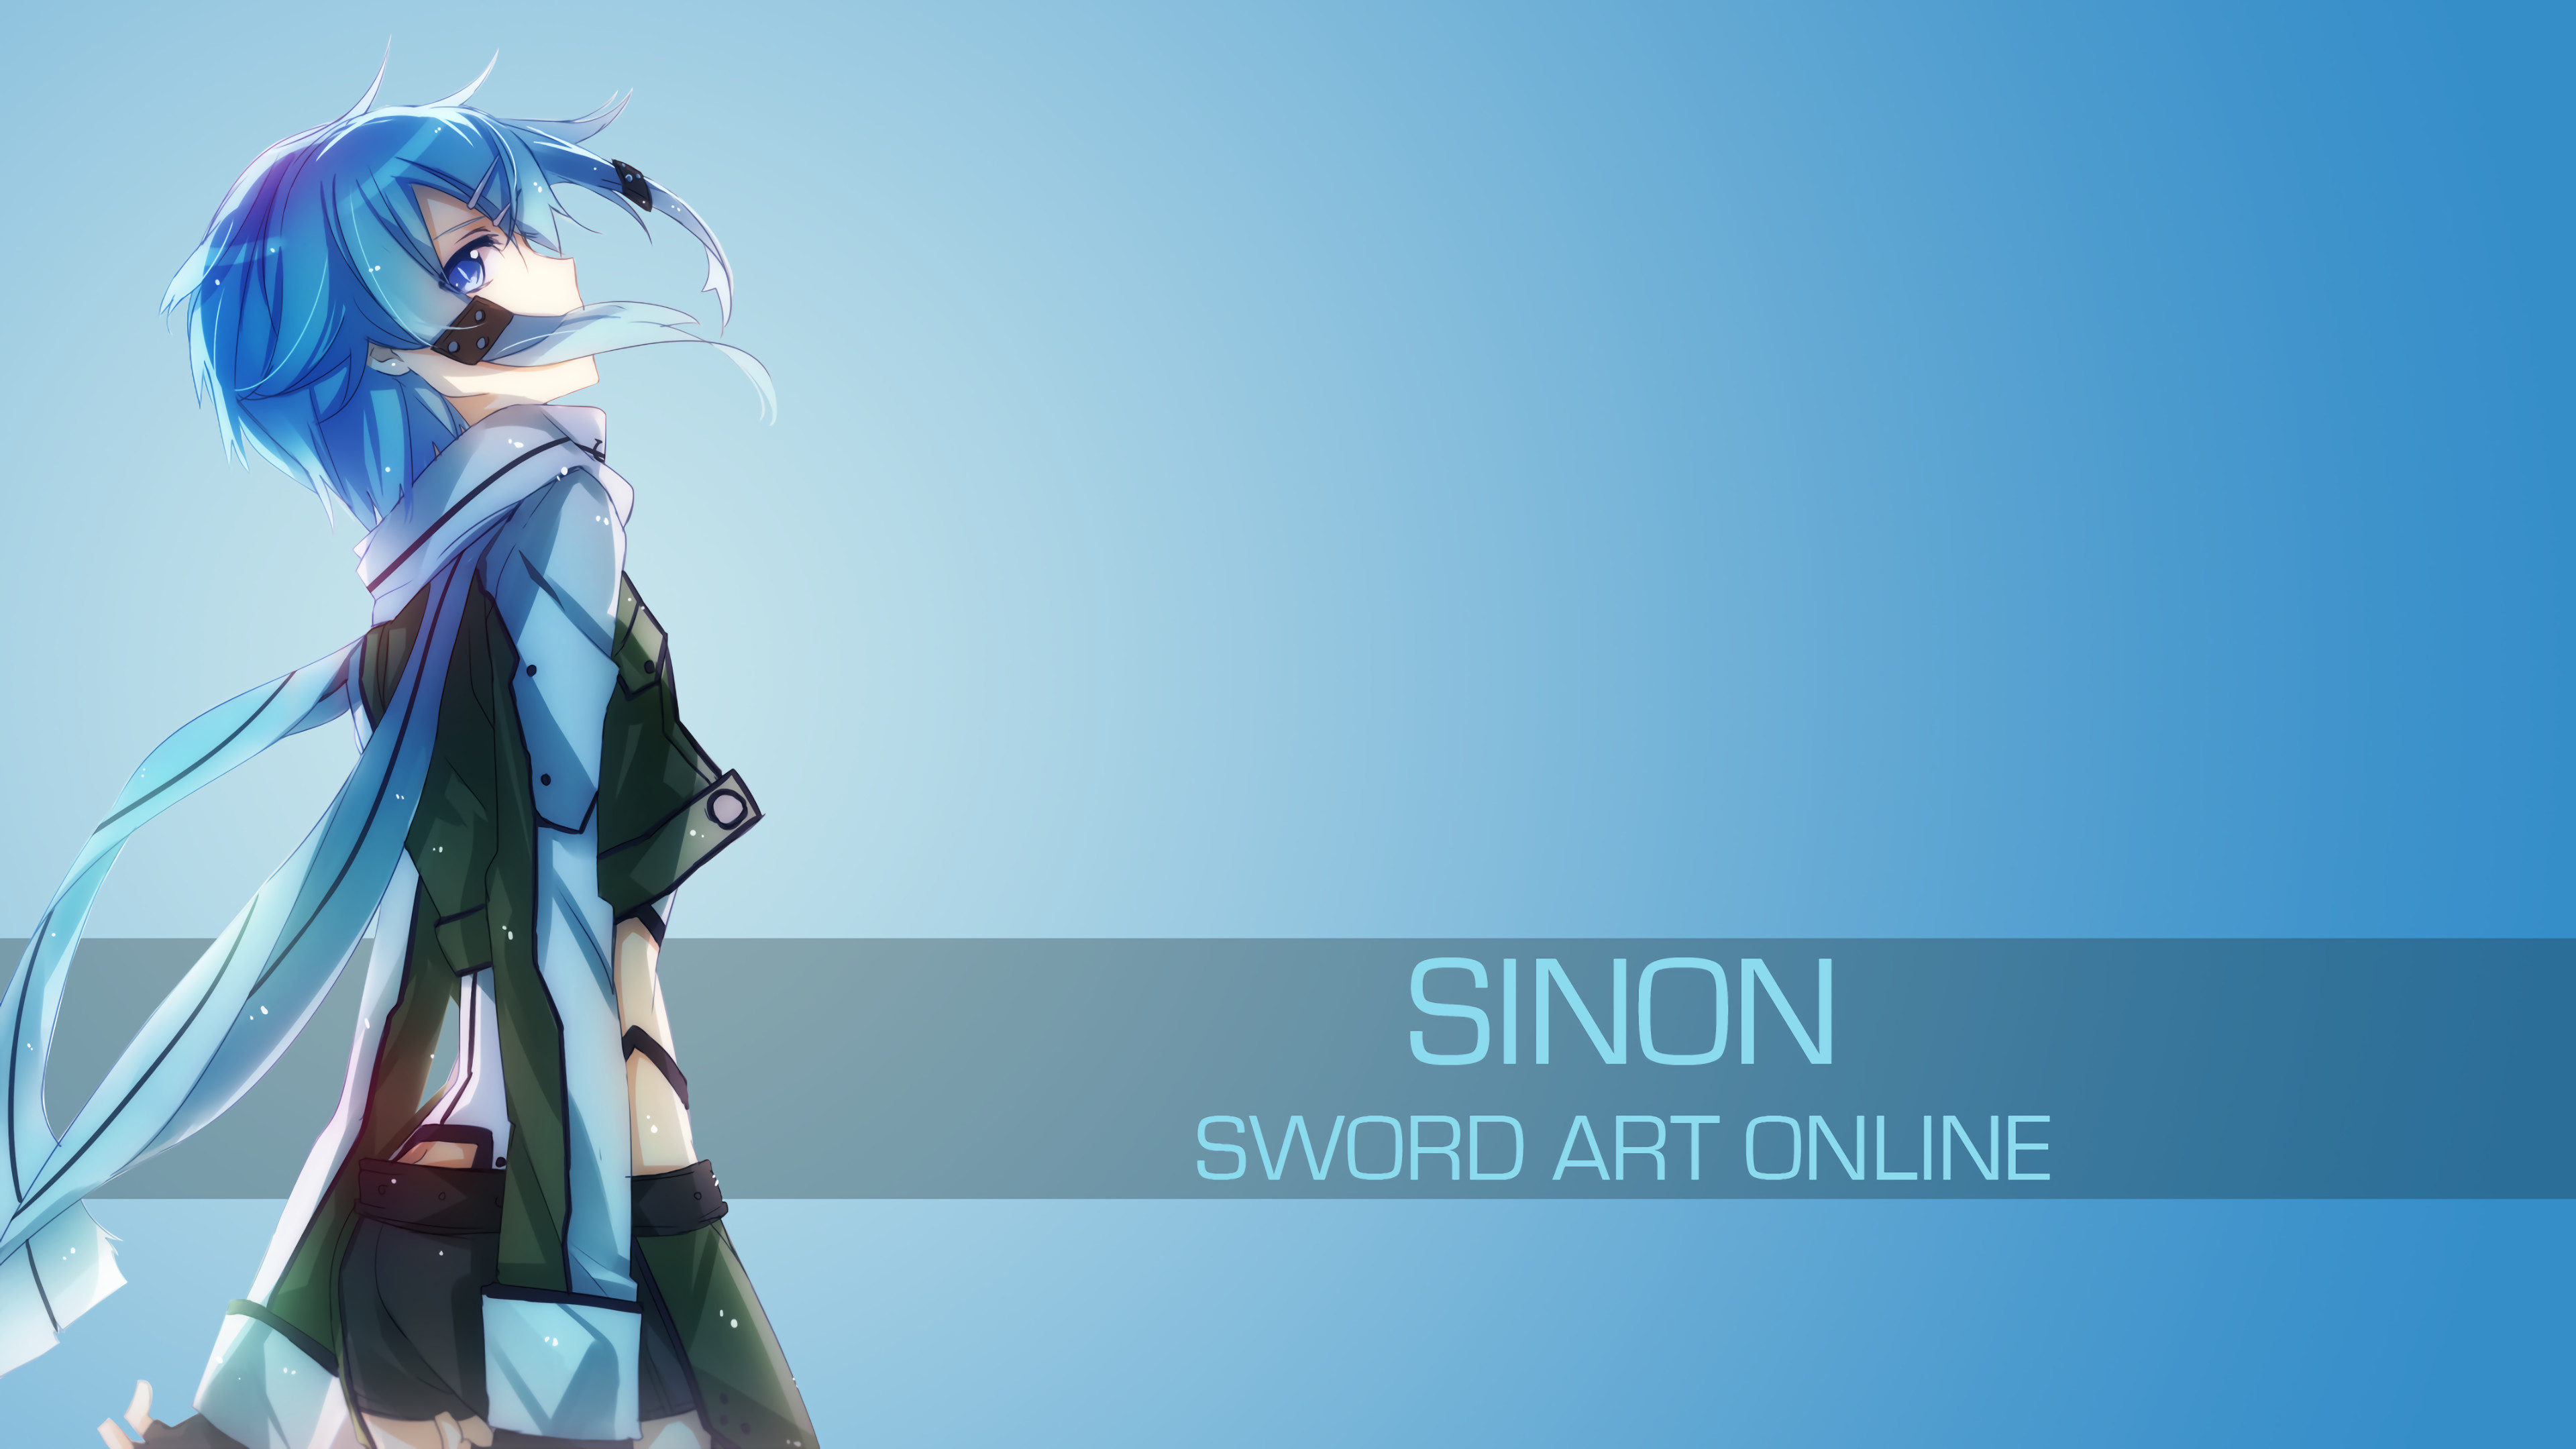 … Sword Art Online-Sinon 1 by spectralfire234